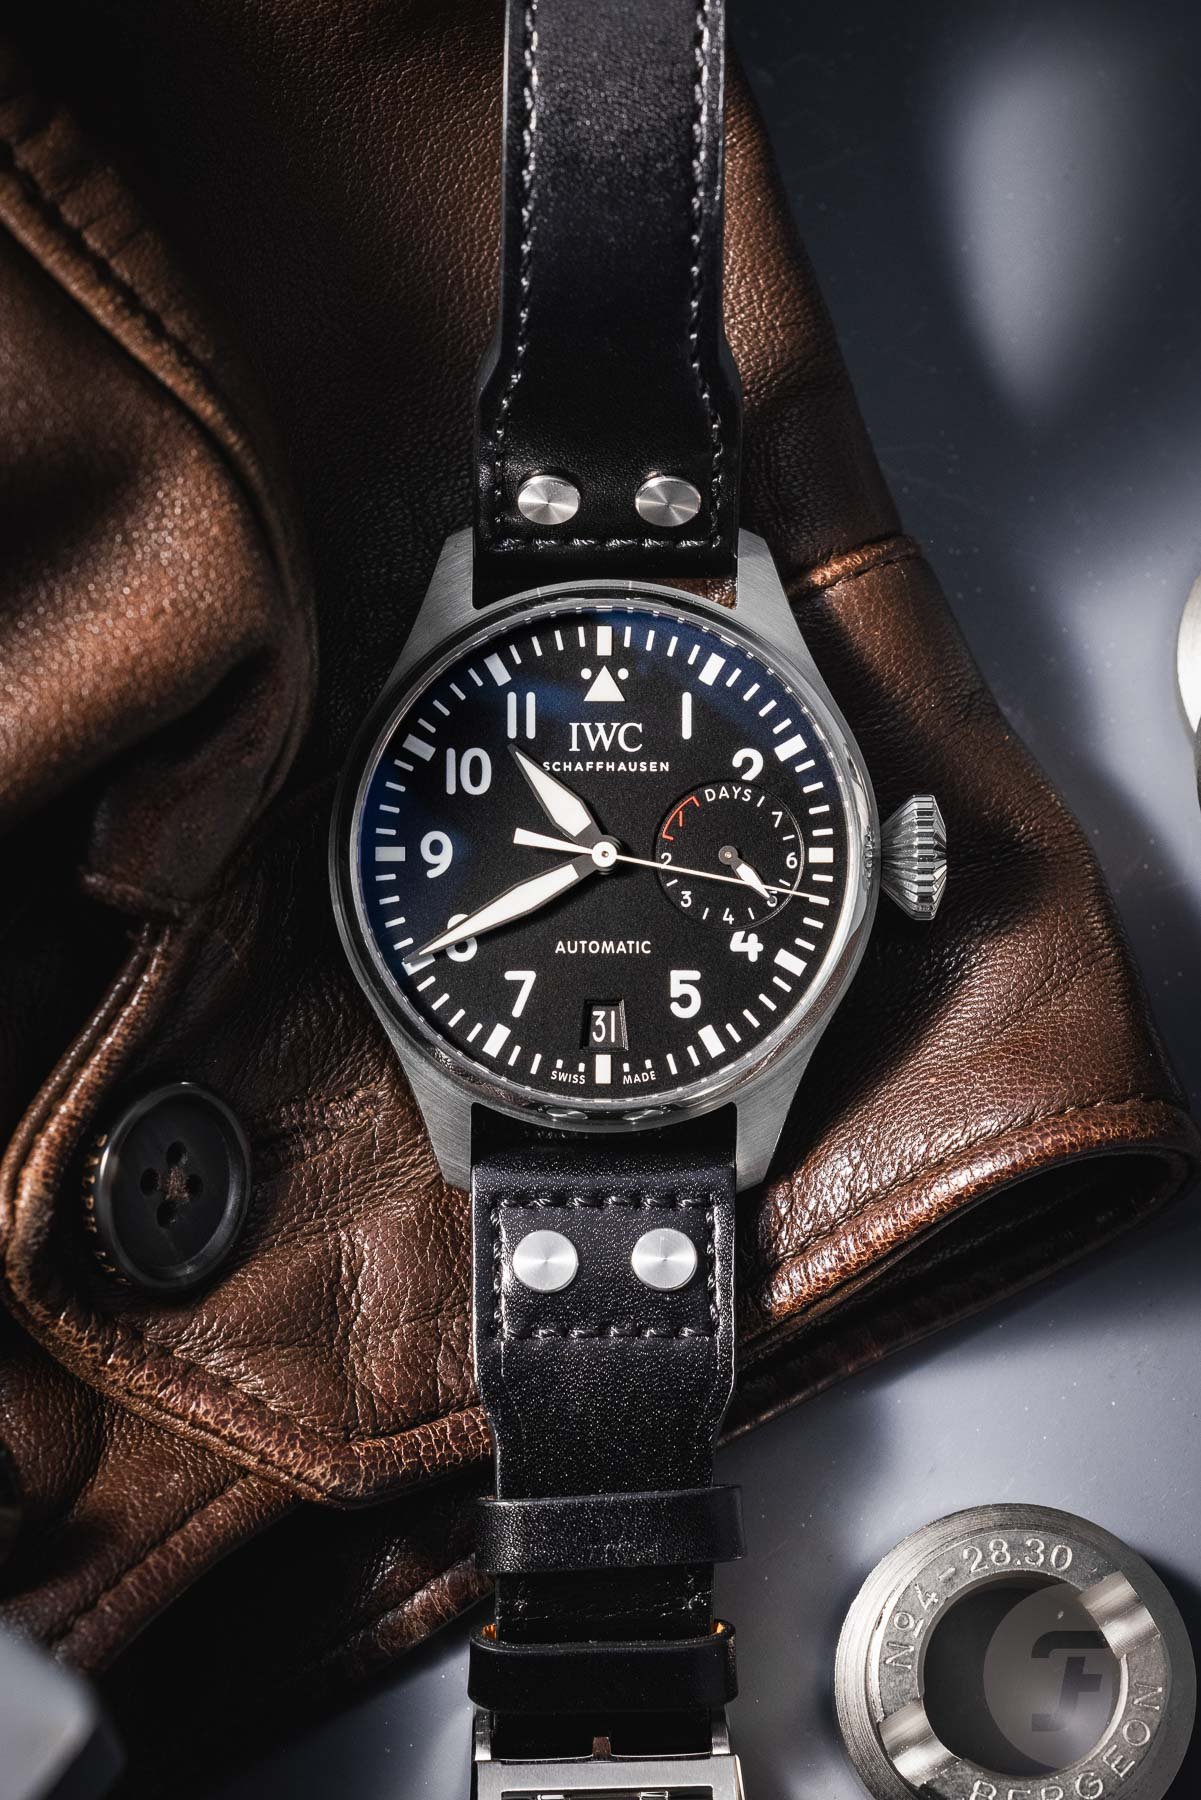 Часы IWC Pilot's Watches - какой размер вам подойдет?